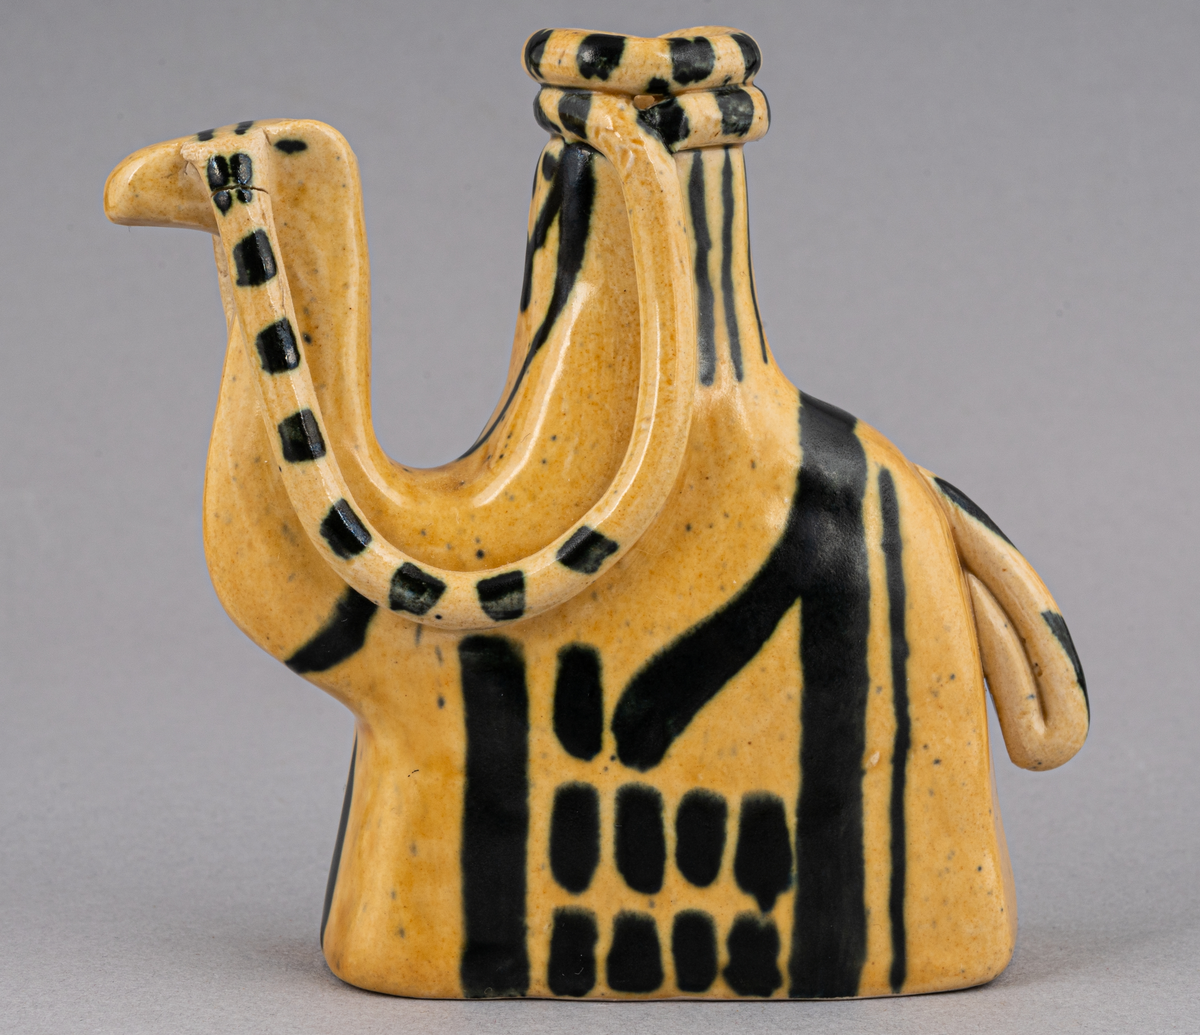 Figurin i lergods, kan även användas som ljusstake för julgransljus. Modell 6001, formgiven av Eva Jancke Björk under 1940- eller 1950-talet. Glasyr/dekor SV; curryfärgad bottenglasyr med svart dekor. Figurinen föreställer en arab sittandes på en kamel.